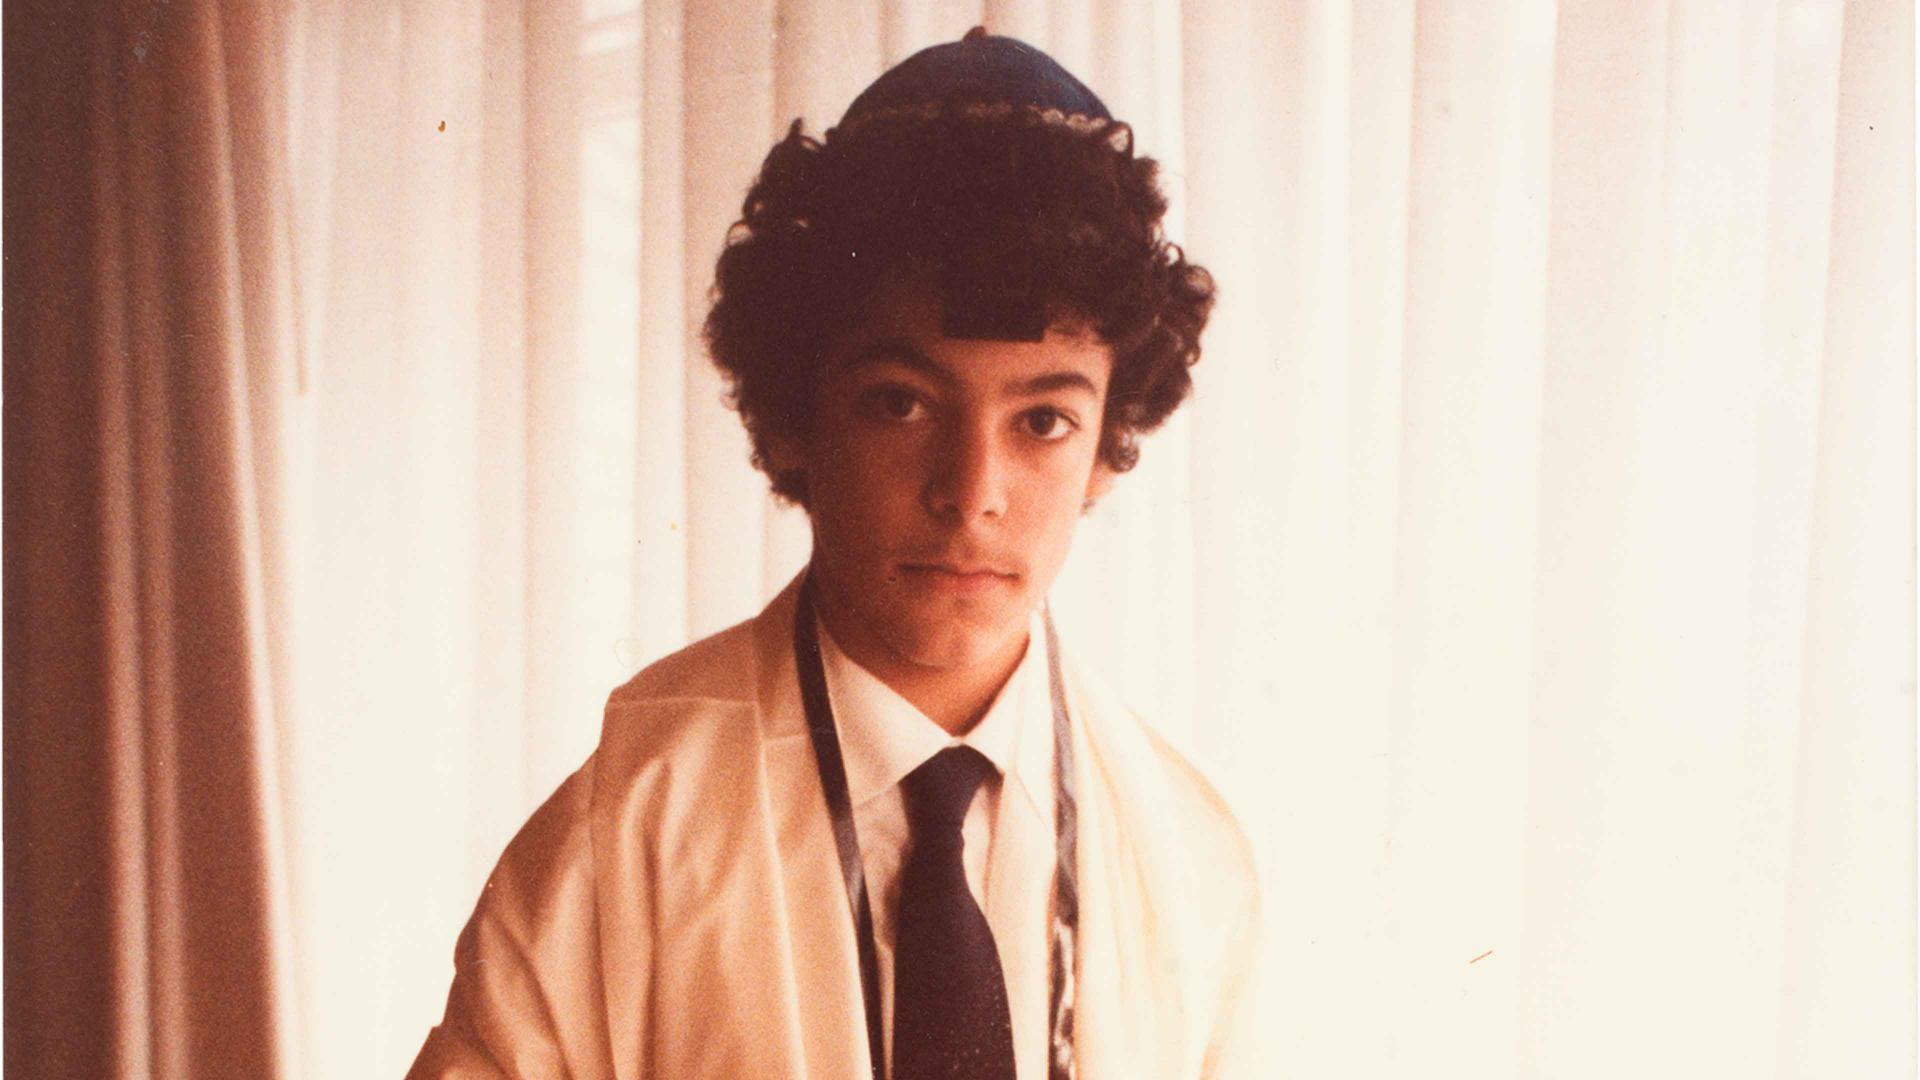 Porträt von Rabin Yaghoubi, der einen Tallit, Tefillin sowie eine Kippa trägt. 